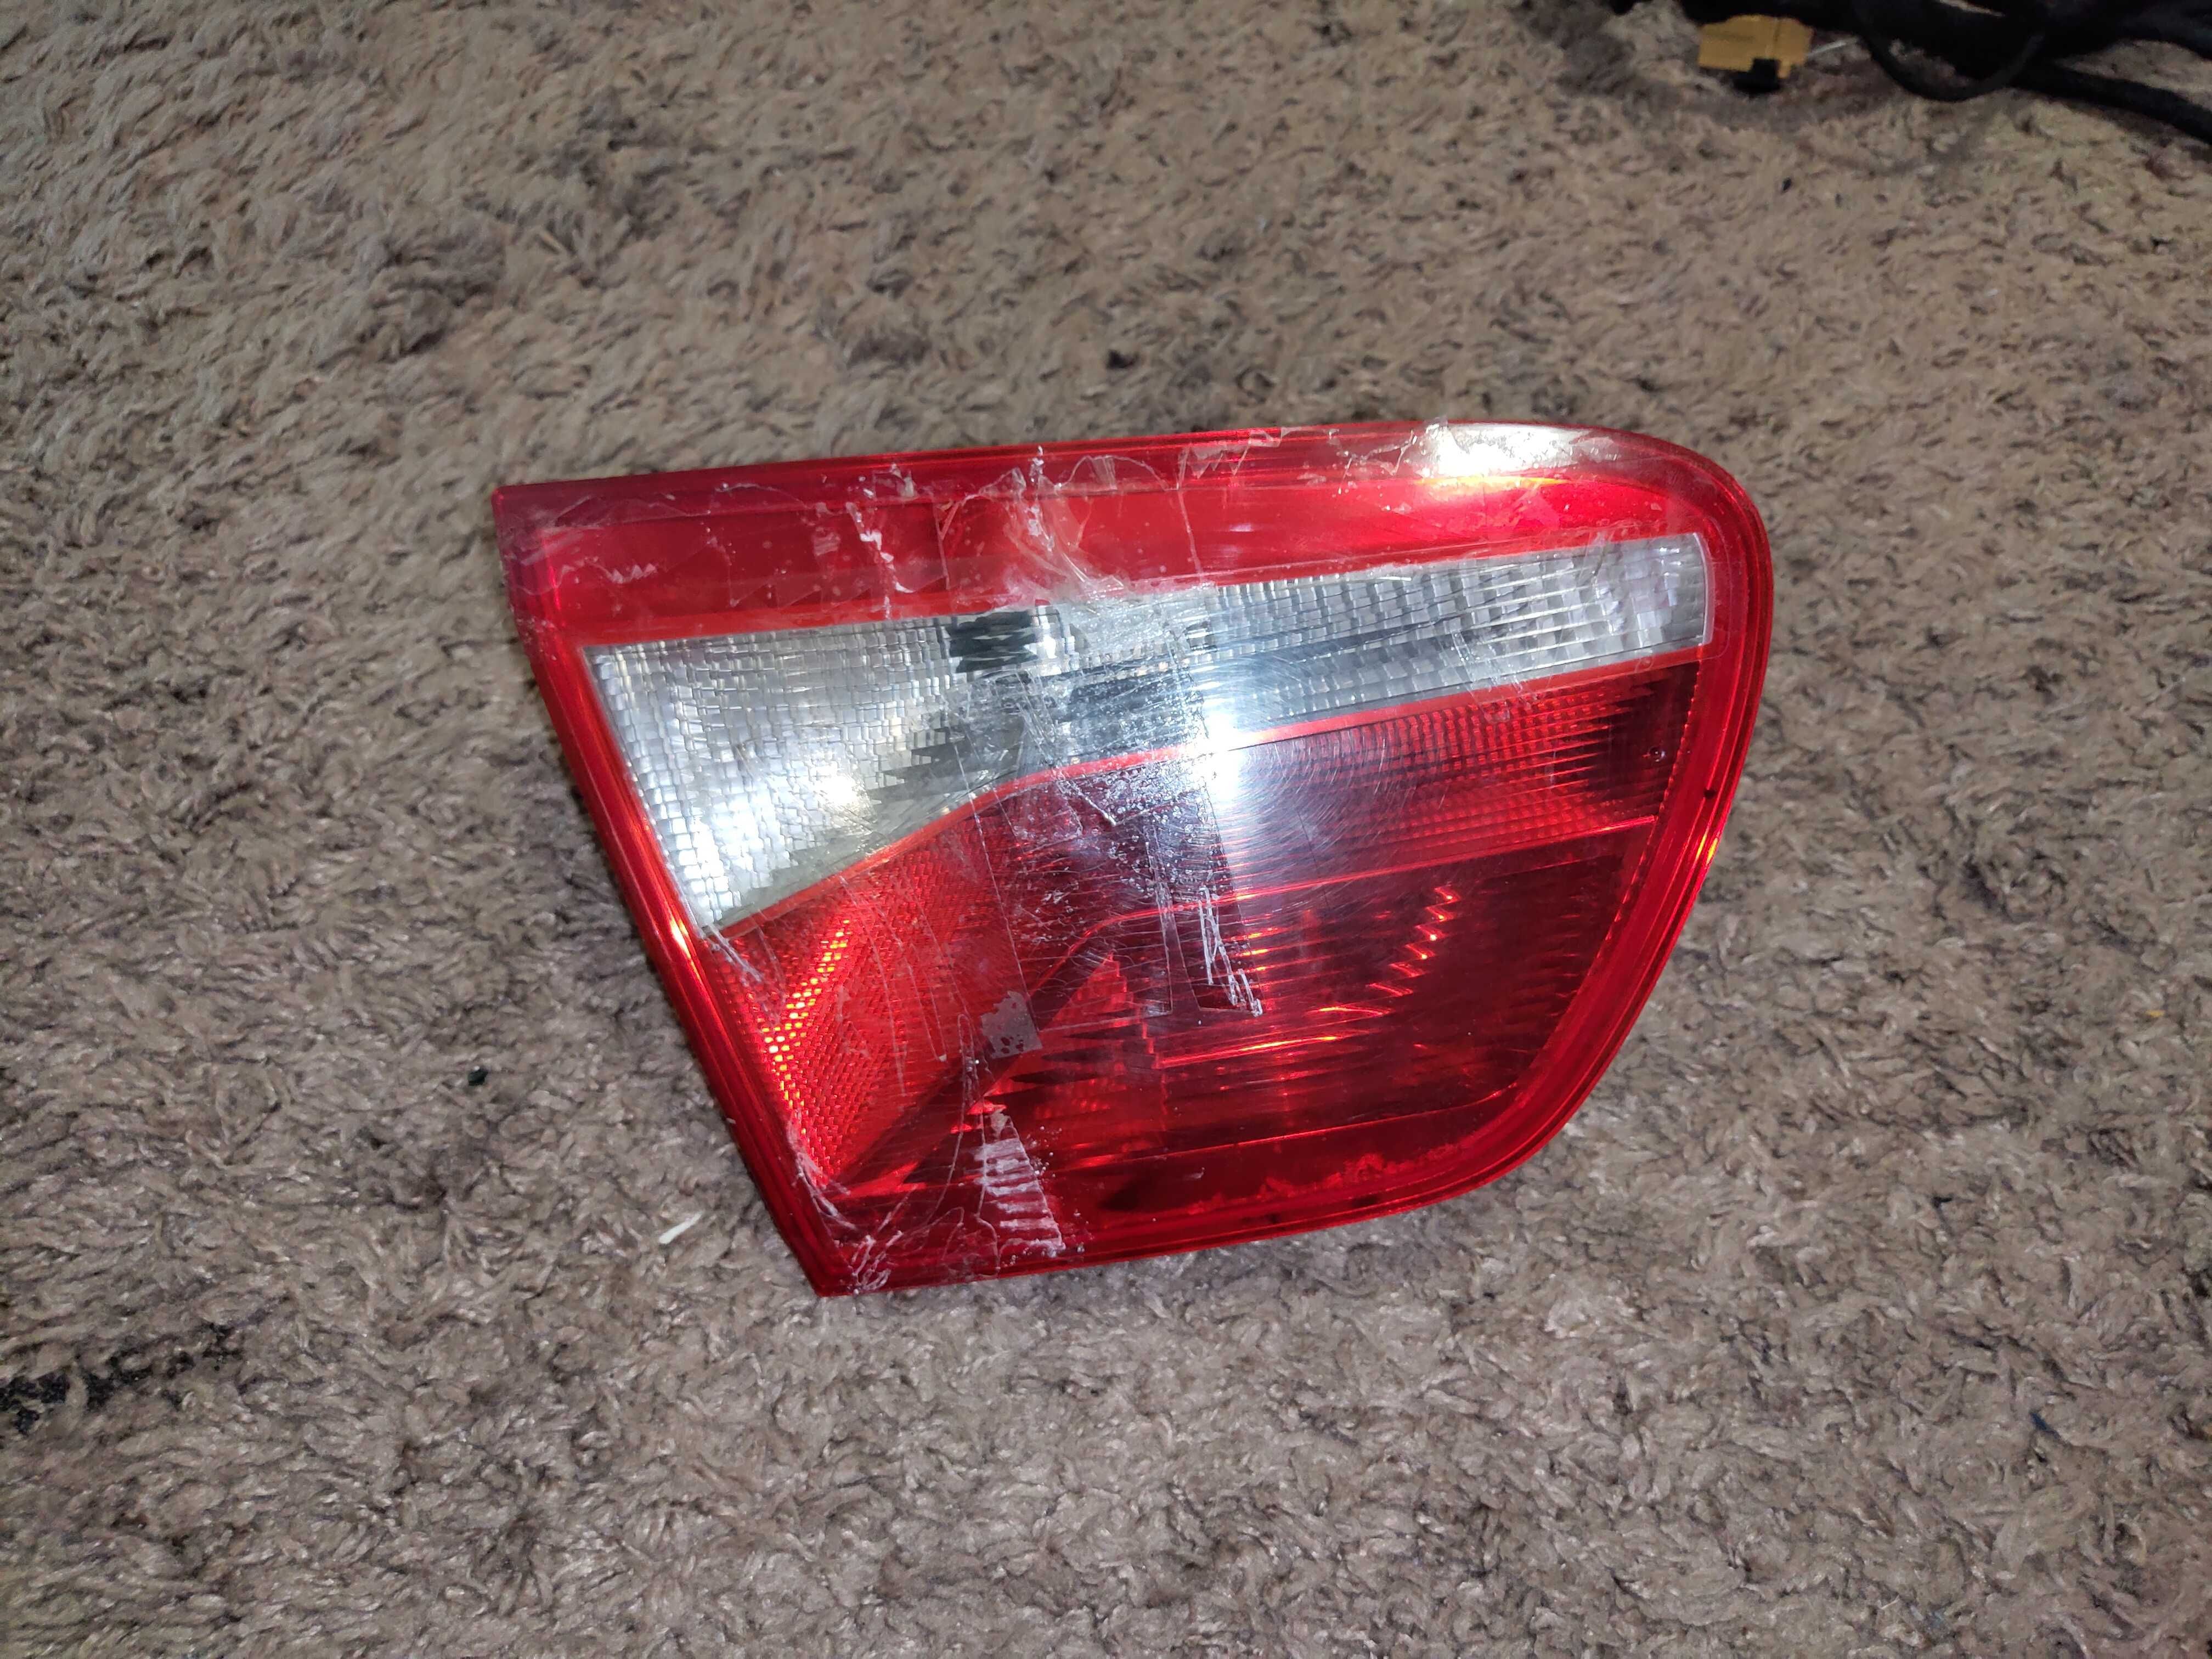 6J8945096 - 93 ліхтарі задні правий та лівий SEAT Ibiza/ST 2009-2015